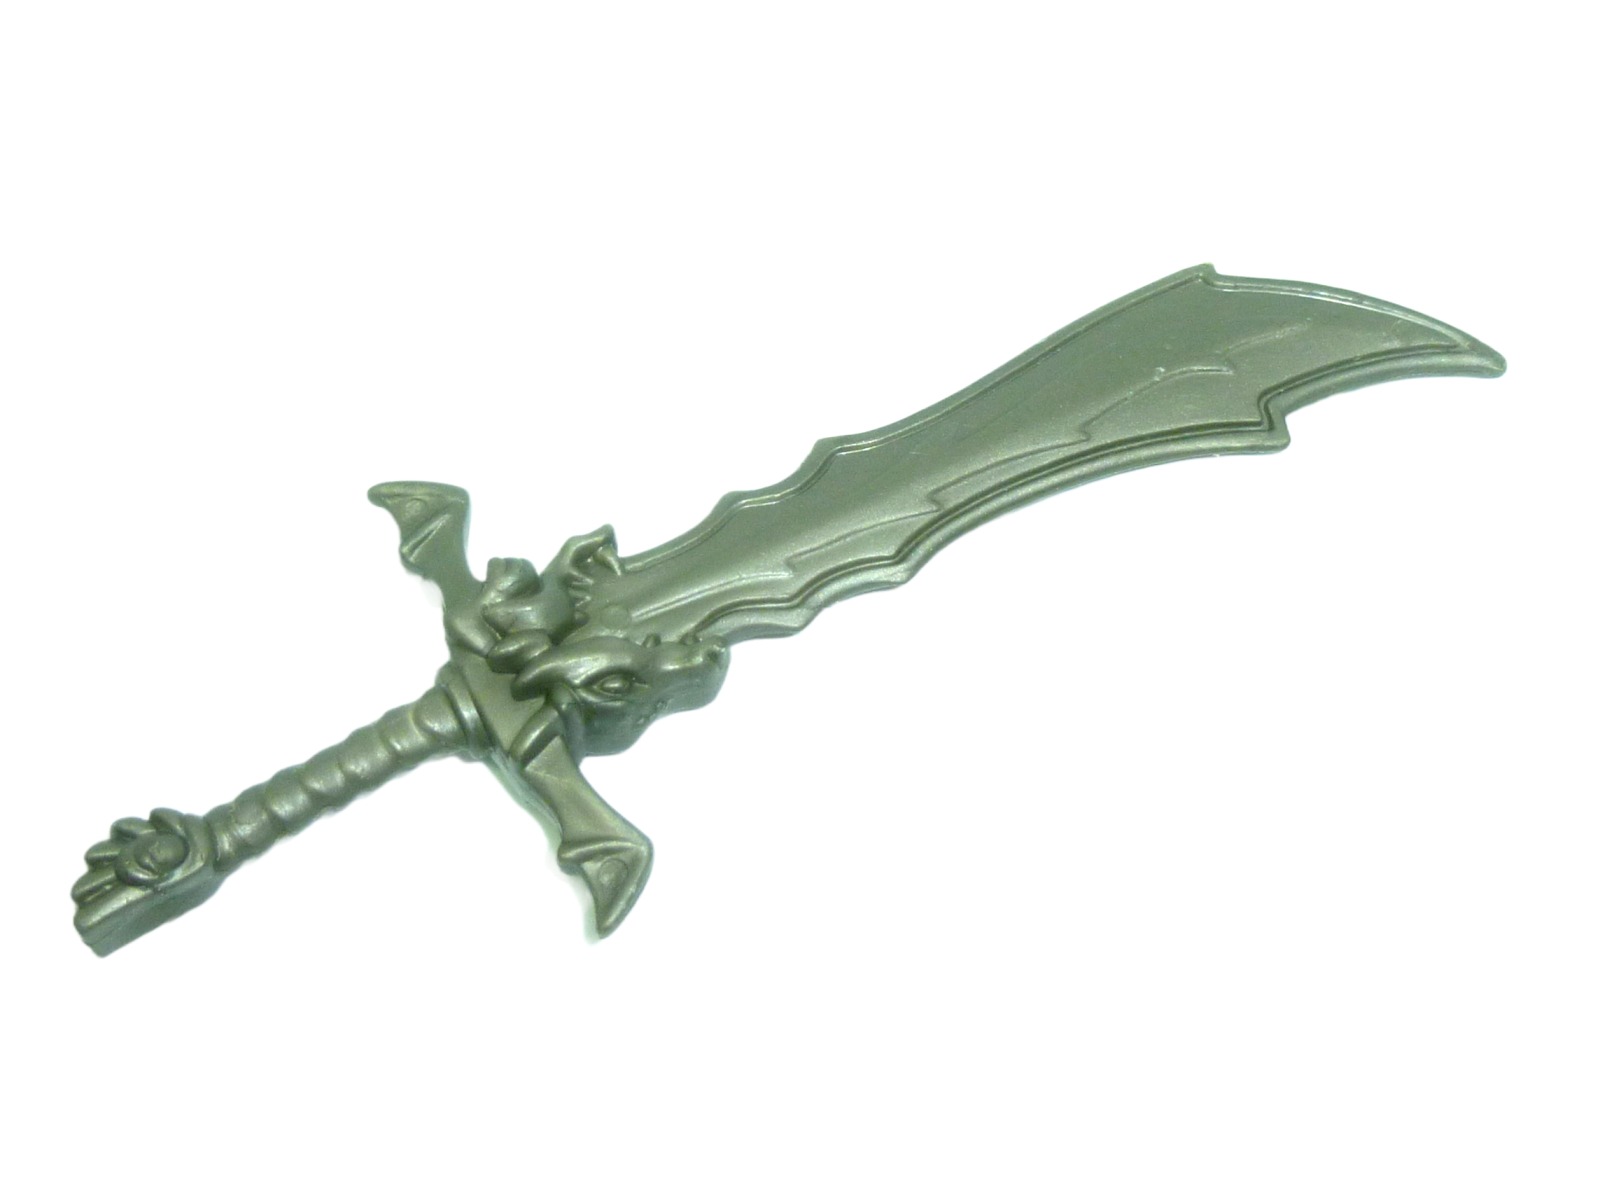 Blue Knight sword / weapon Chap Mei 1998 2